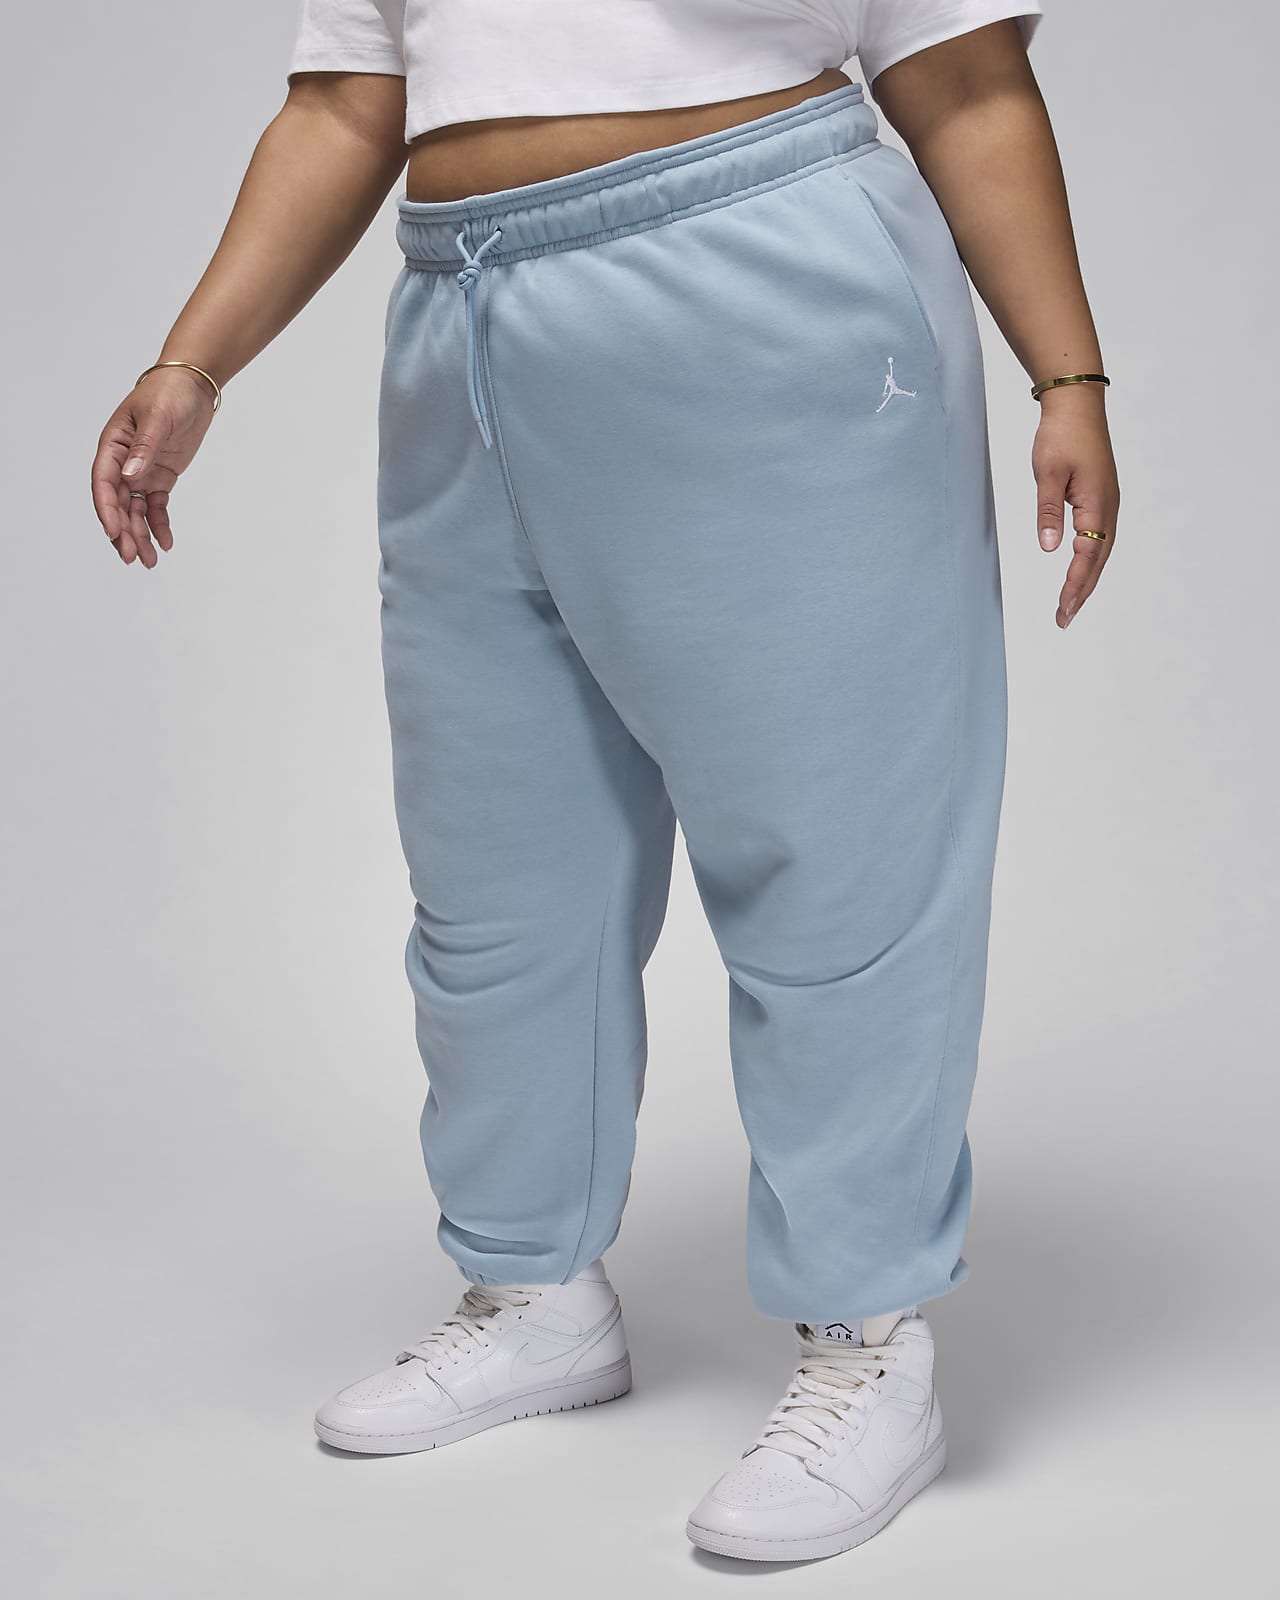 Jordan Brooklyn Fleece Women's Pants (Plus Size).